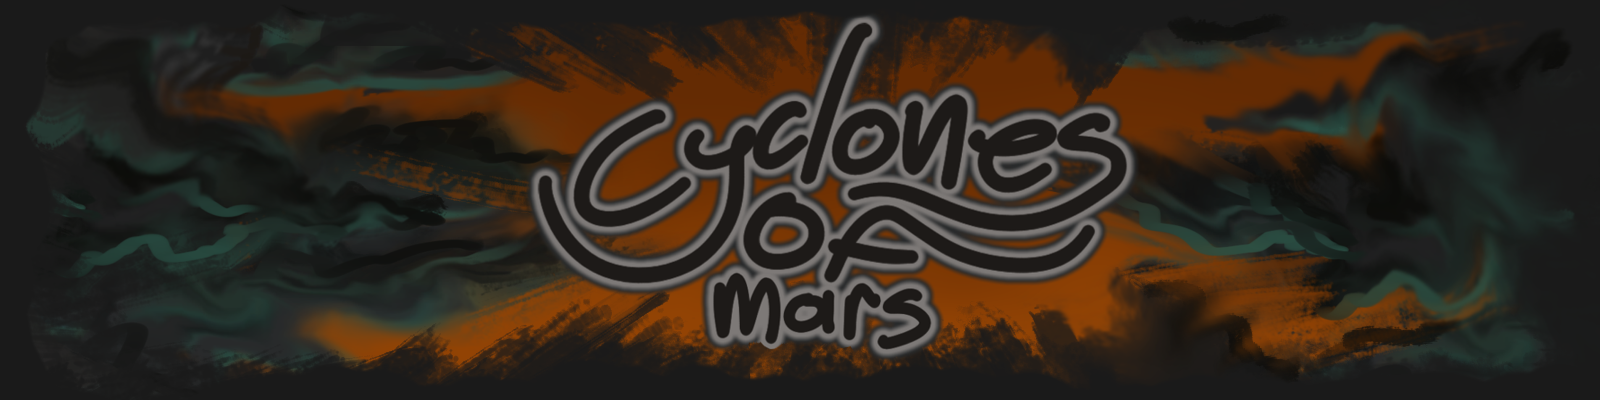 Cyclones of Mars